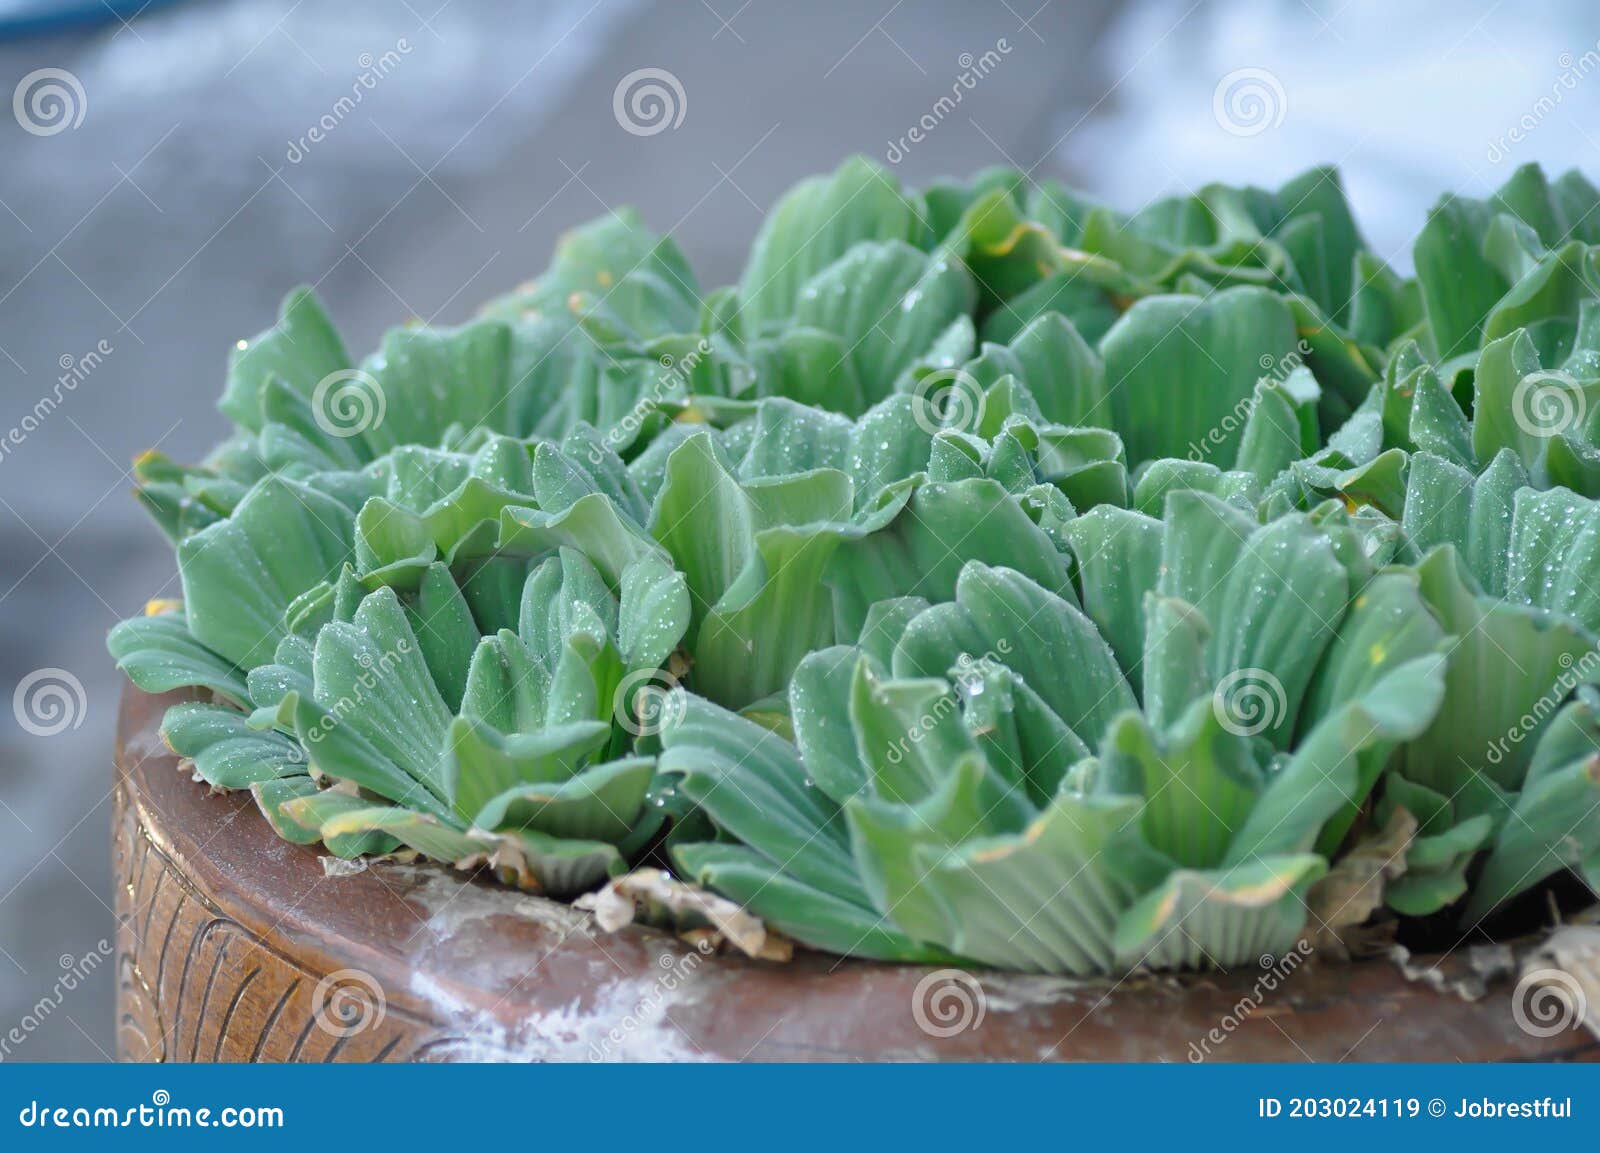 eichornia crassipes, water hyacinth or dew drop on water hyacinth